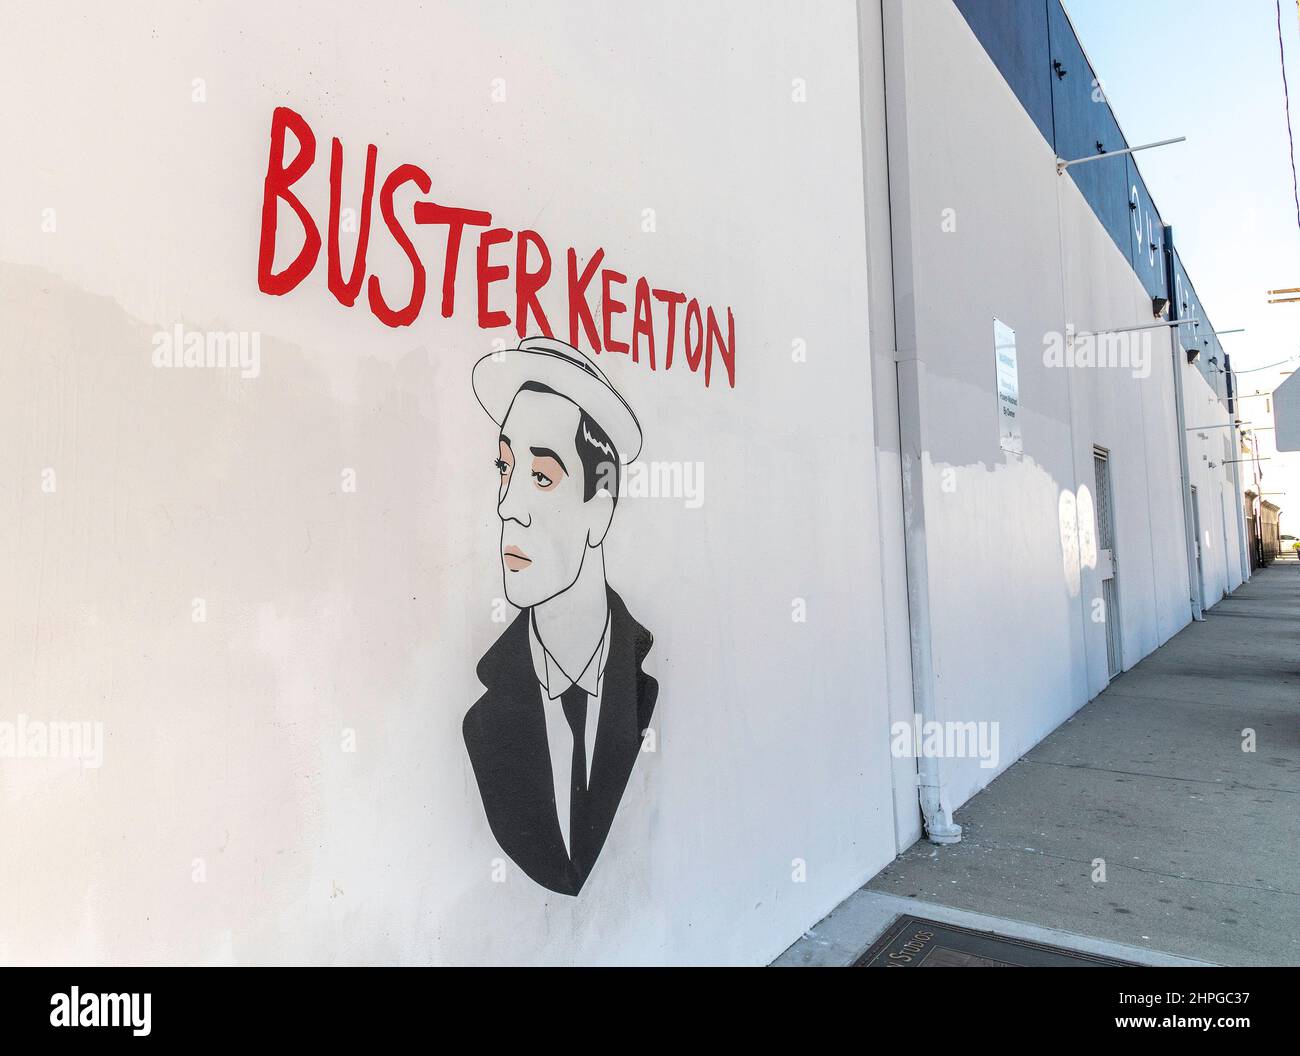 Los Angeles, CA, USA - 18. Februar 2022: Außenansicht des Quixote Film Production Supply mit einem Gedenkbild von Buster Keaton. Stockfoto